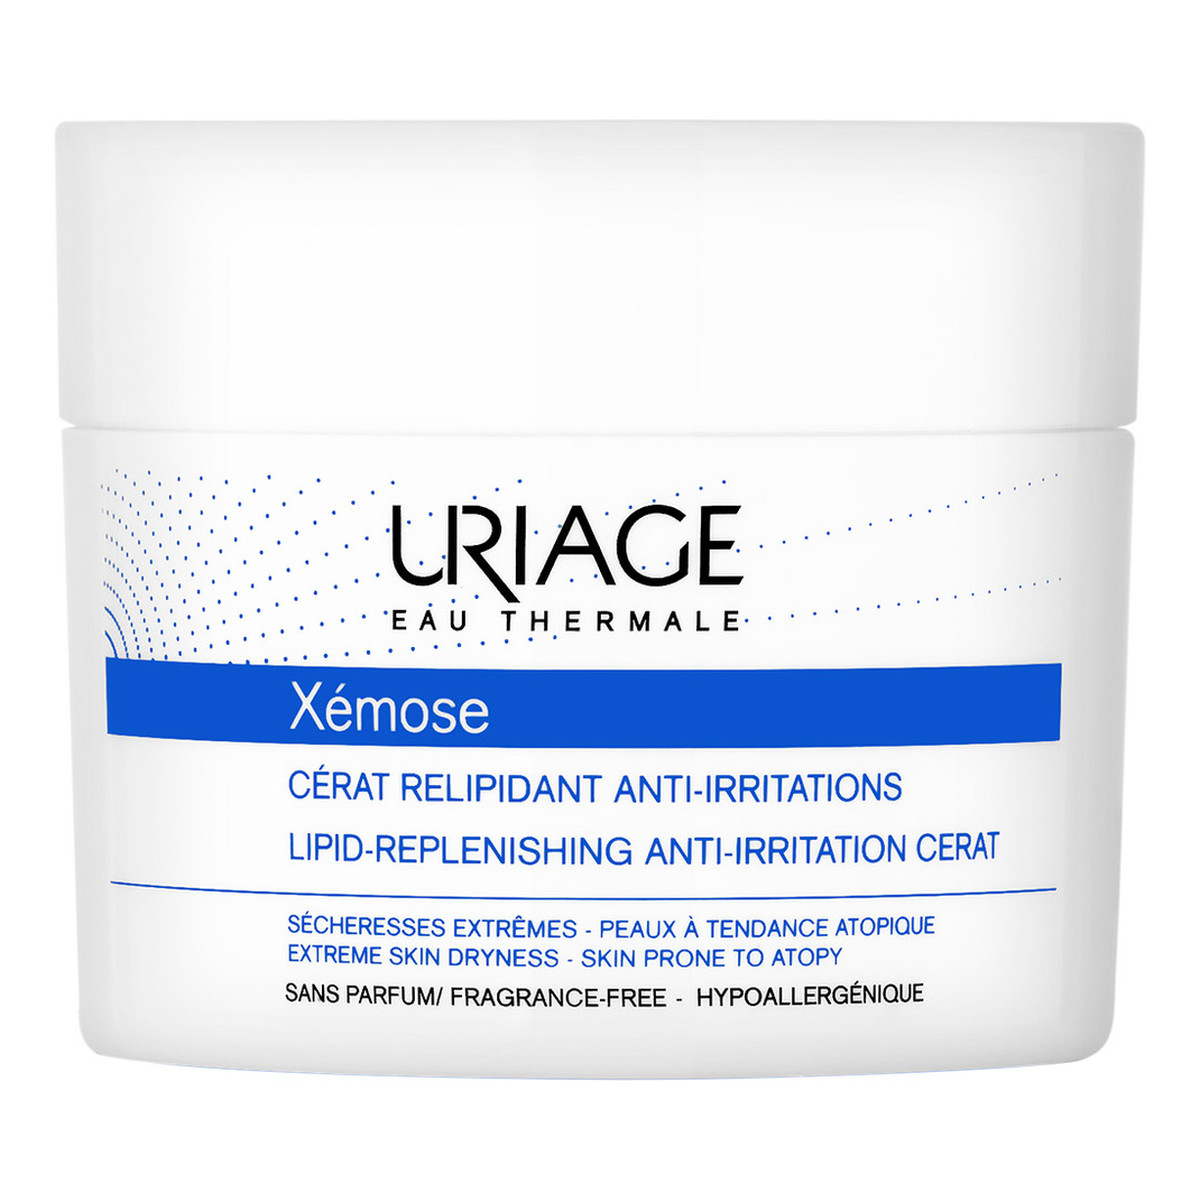 Uriage Xemose Lipid-Replenishing Anti-Irritation Cerat kojący Balsam uzupełniający lipidy do skóry bardzo suchej ze skłonnością do atopii 200ml